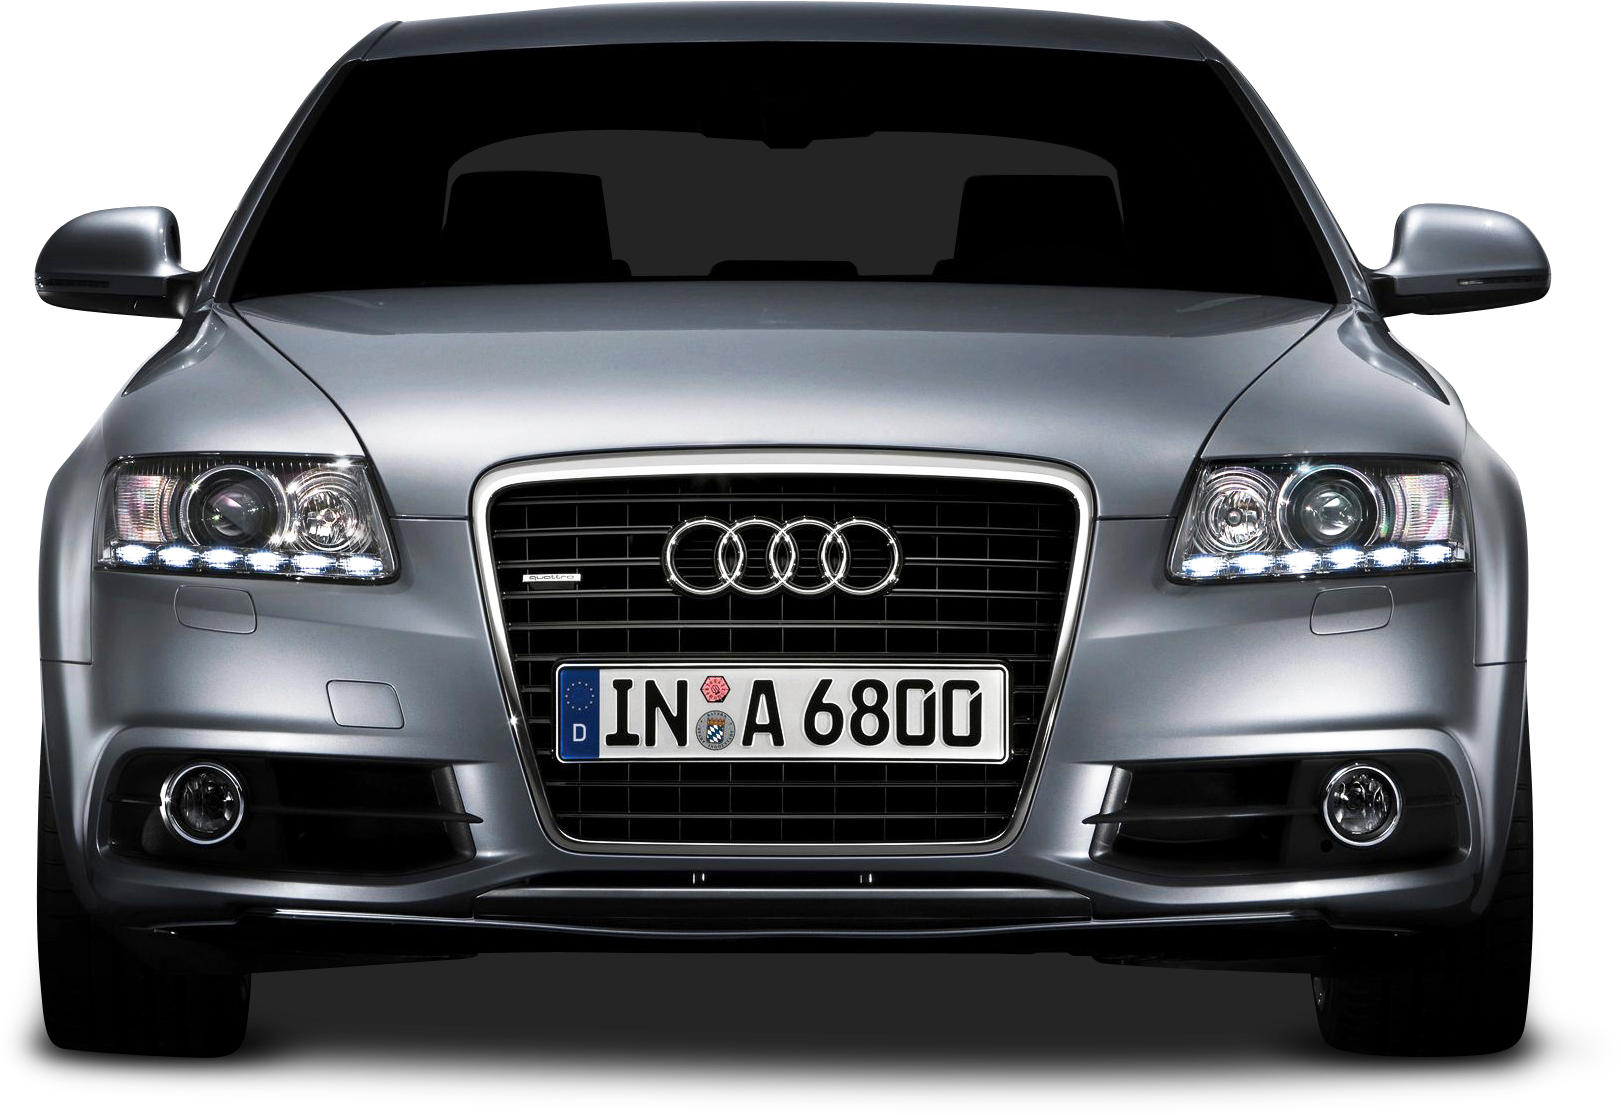 Audi Car Png Image - Car Png Full Hd (500x347), Png Download